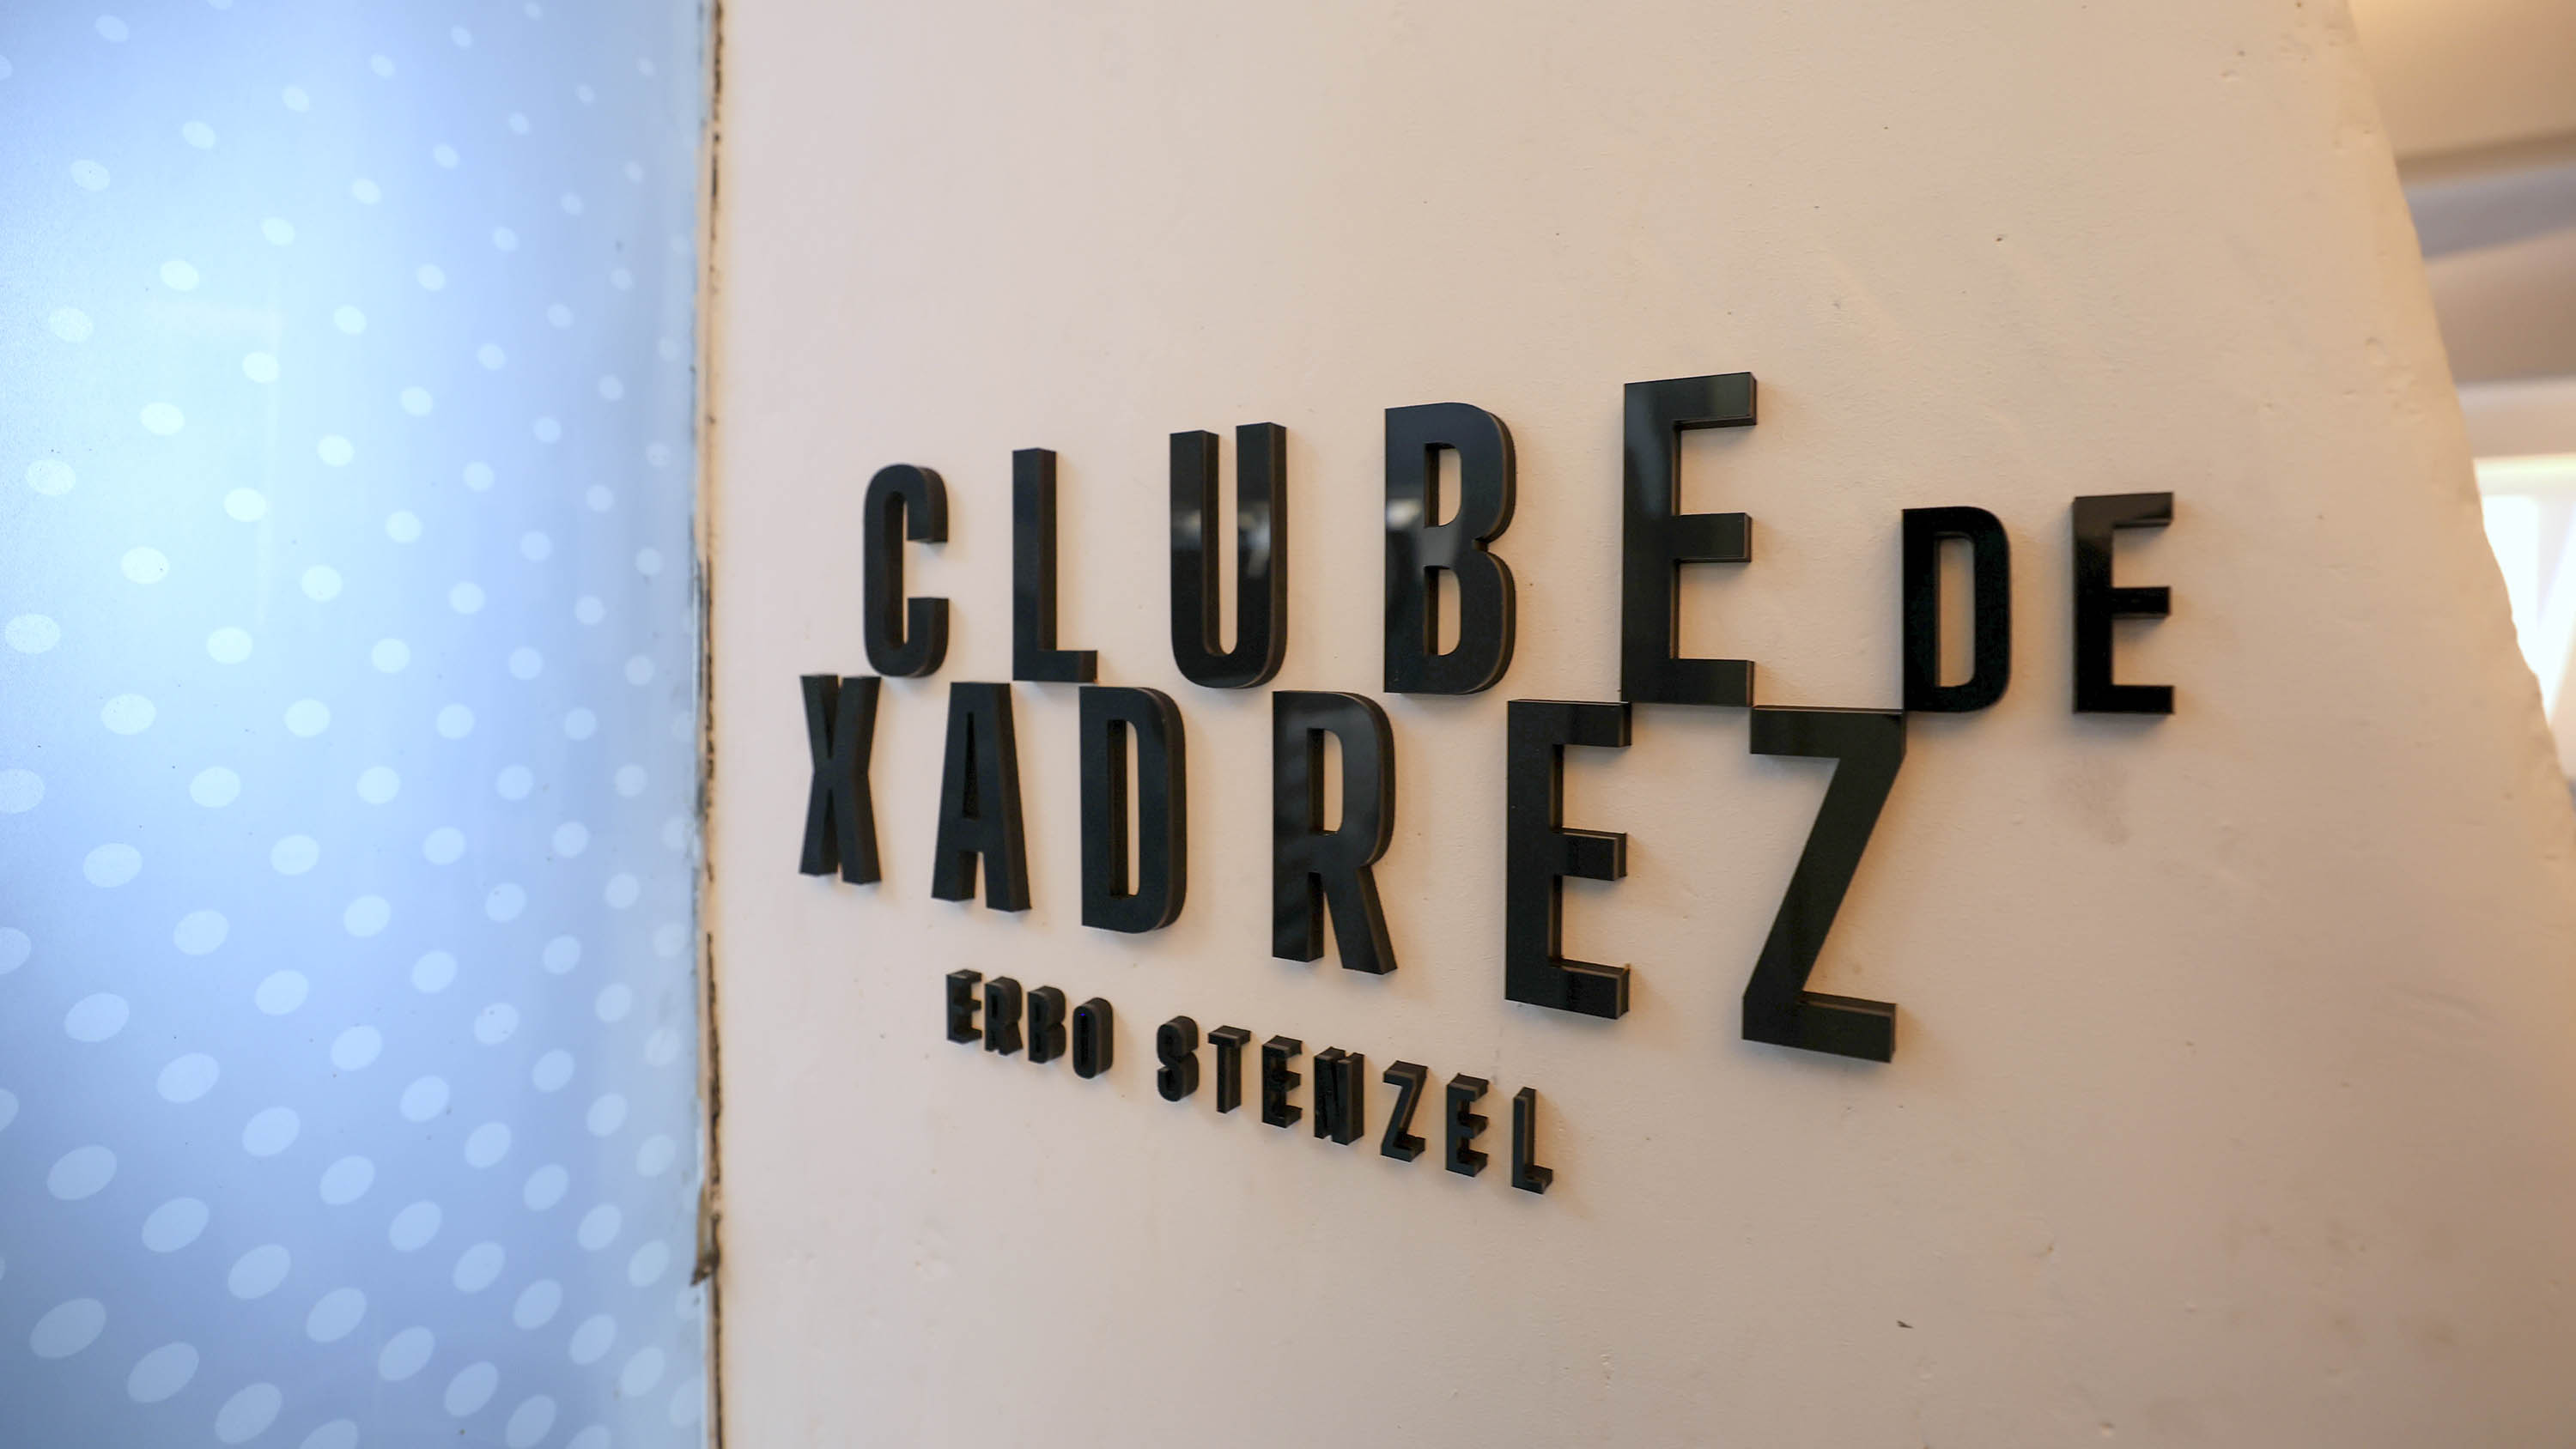 Clube de Xadrez Erbo Stenzel tem portas abertas para apaixonados pelo  tabuleiro - Massa News